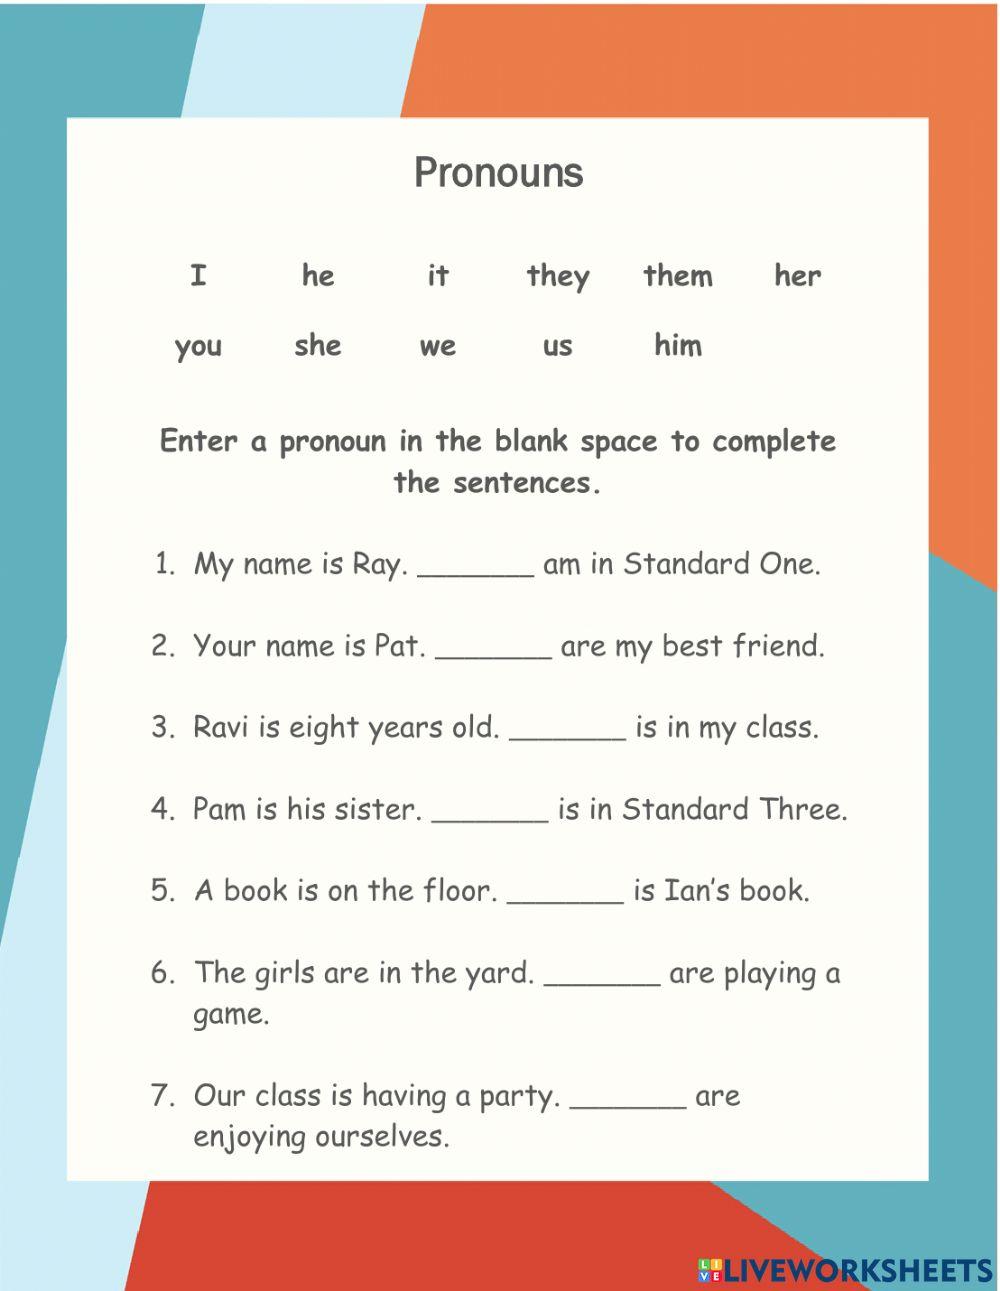 Pronouns Practice